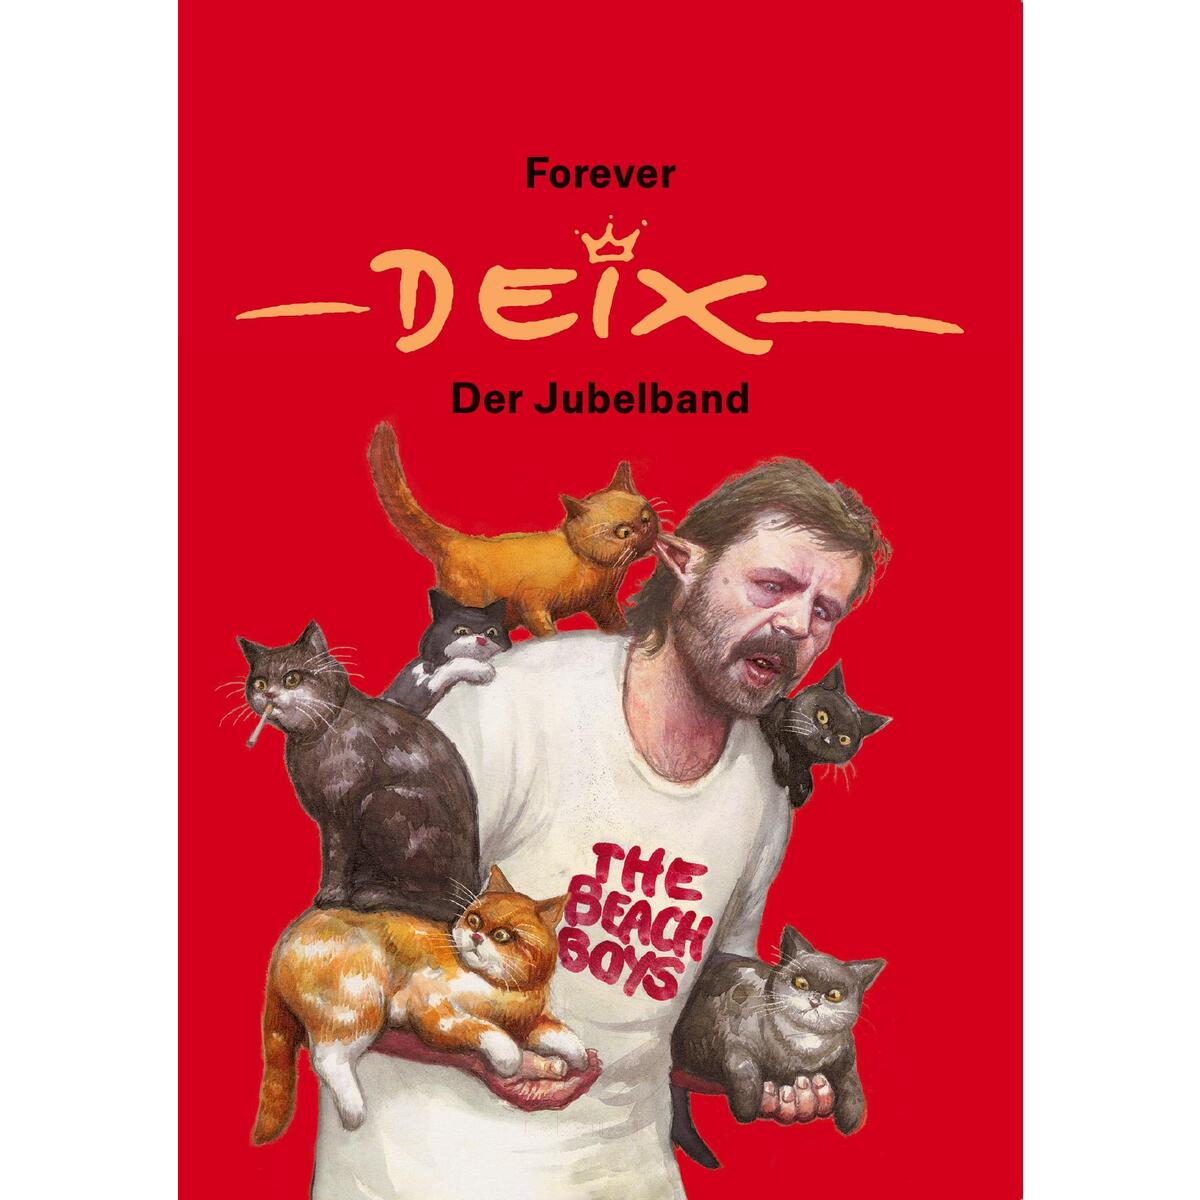 Forever Deix - der Jubelband von Ueberreuter, Carl Verlag